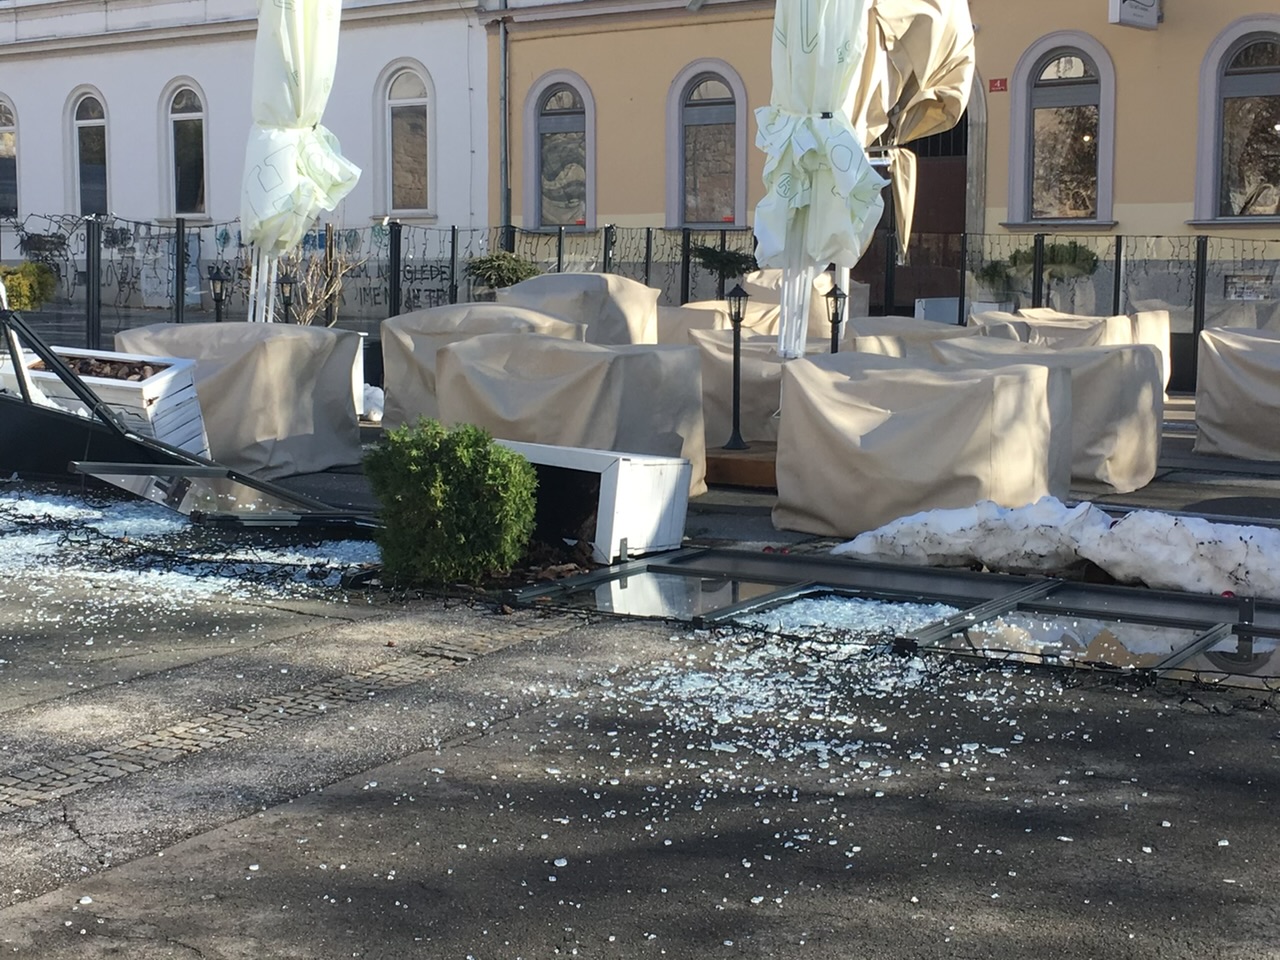 FOTO: Veter v Mariboru uničil ogrado lokala v centru mesta